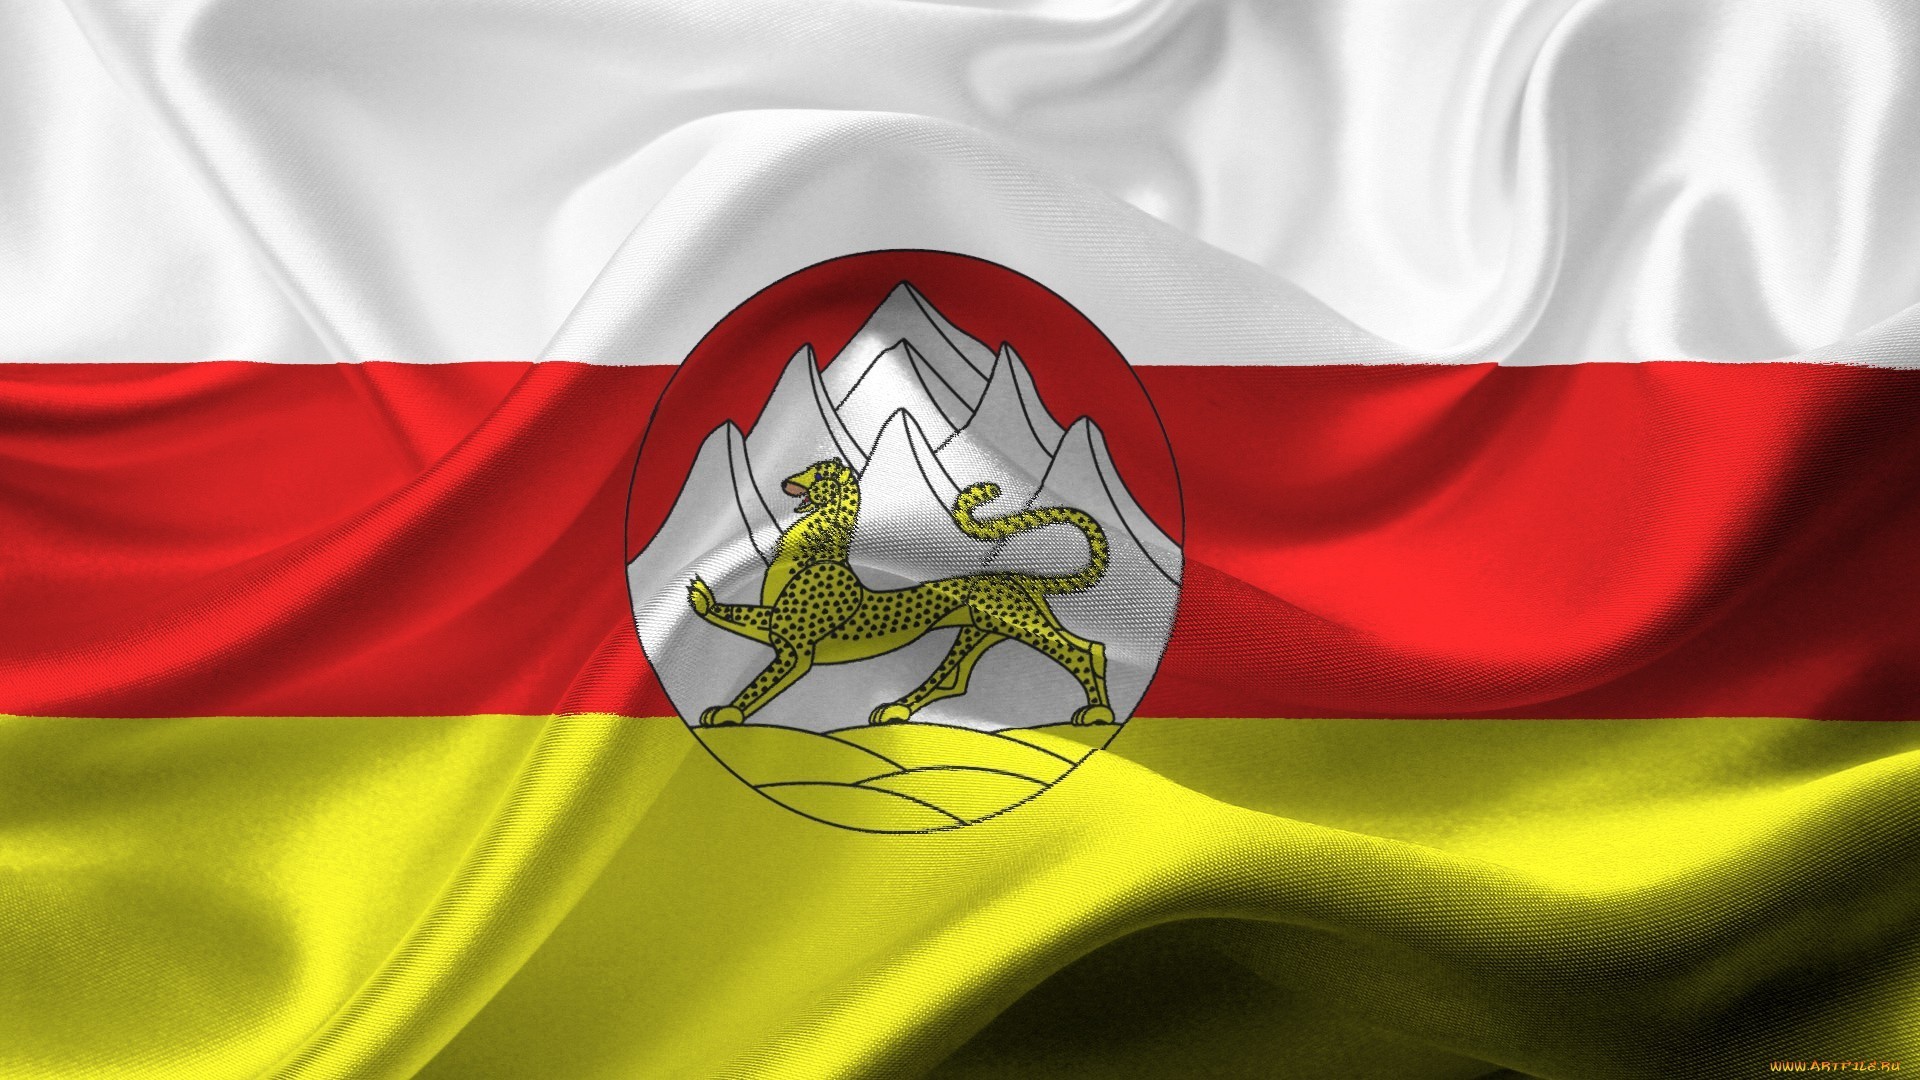 1920x1080 ... Flag of South Ossetia wallpaper | Flags wallpaper | Pinterest ... lebanon  flag ...